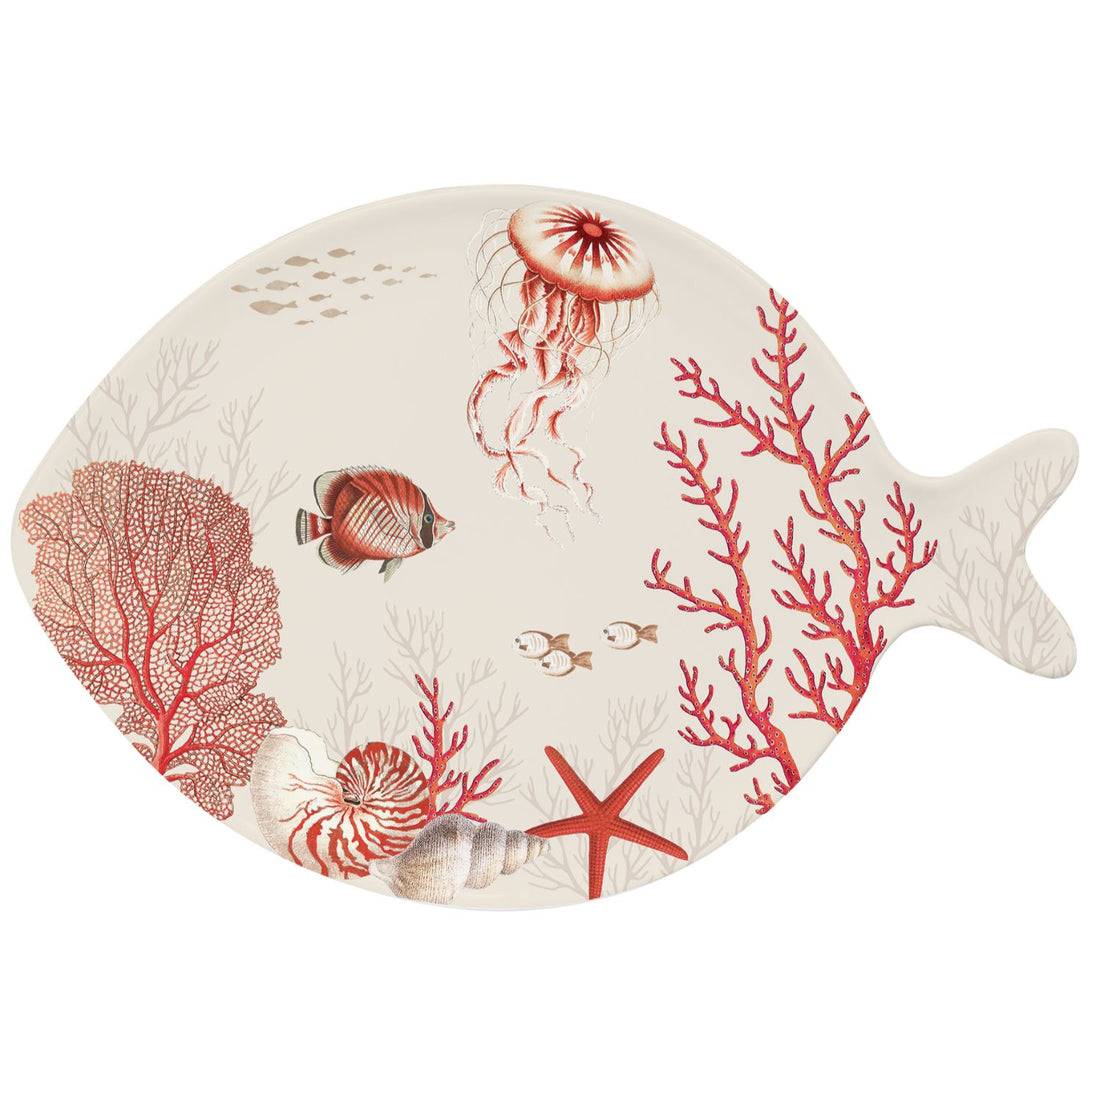 EASY LIFE Coral Reef Piatto Vassoio 27x19cm Porcellana